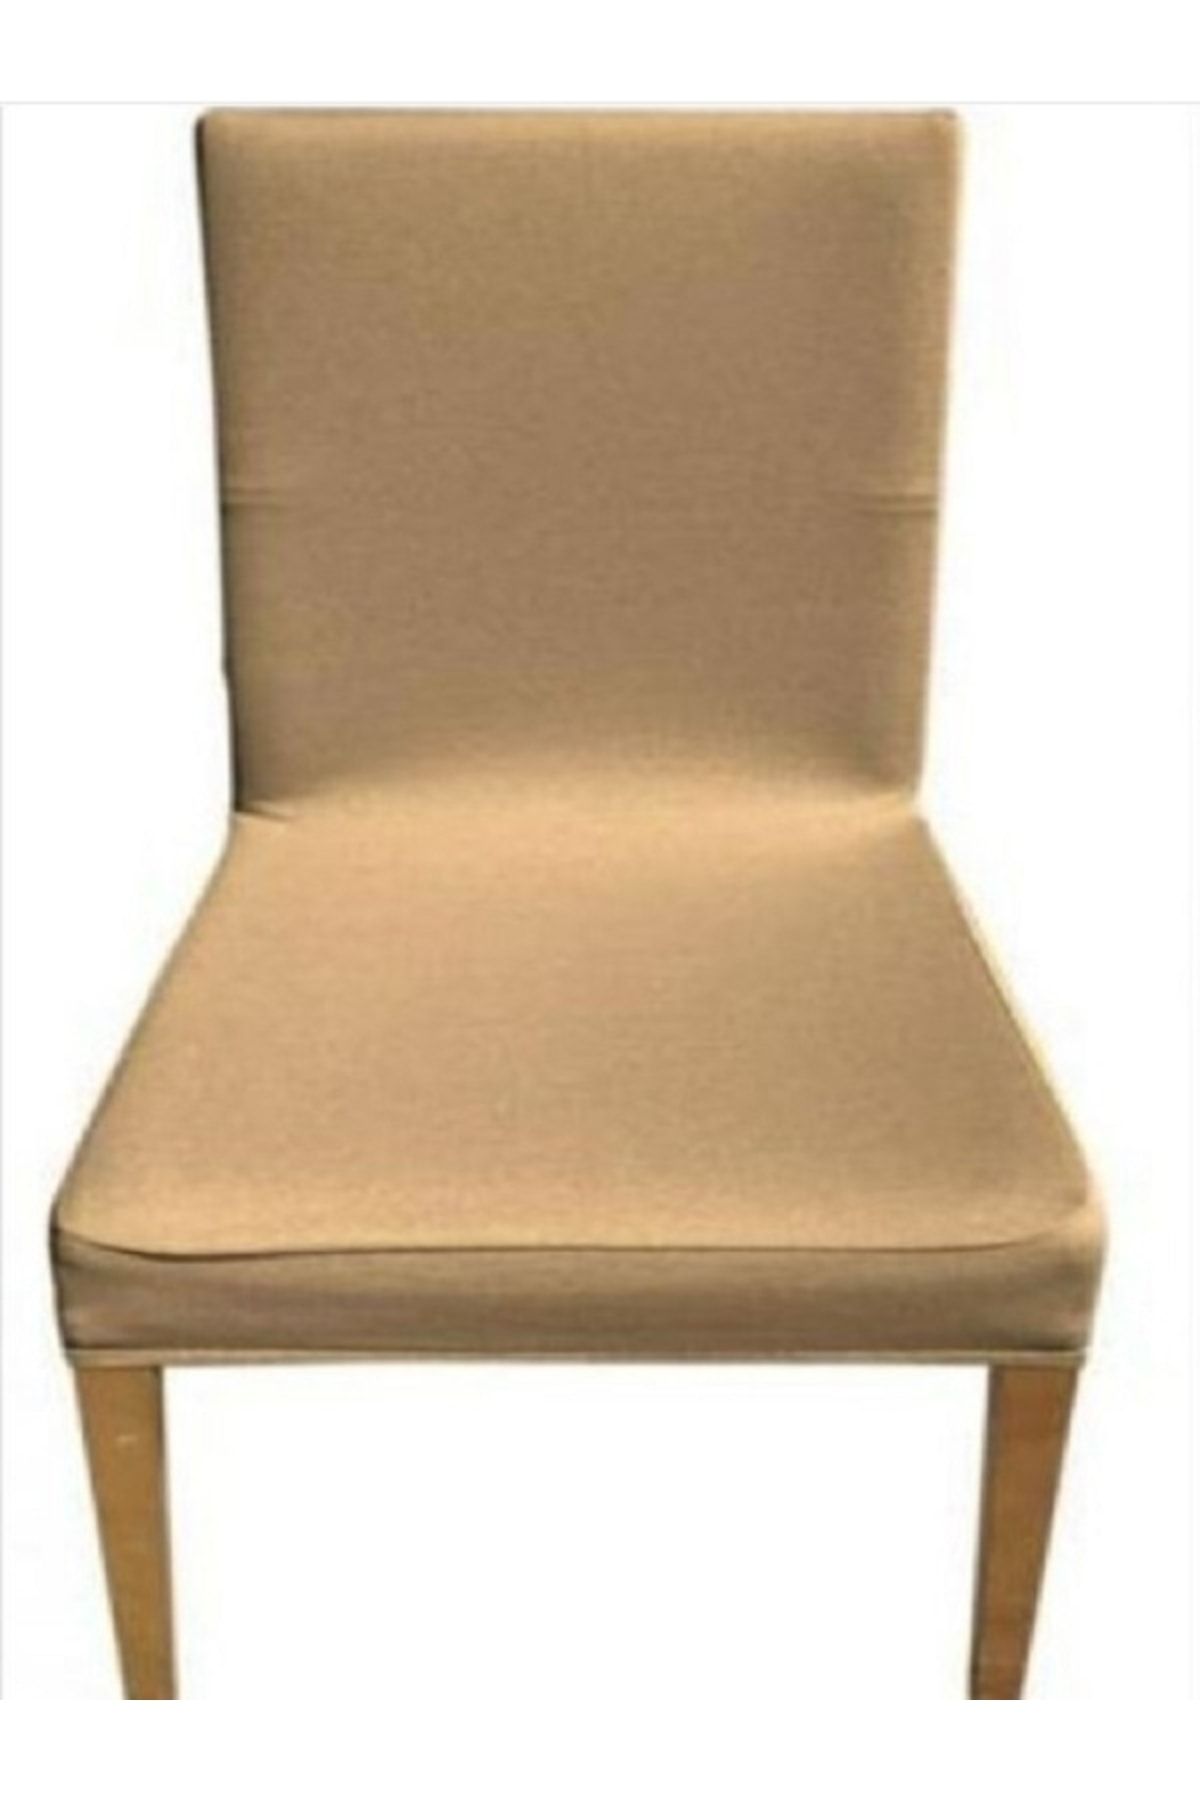 elgeyar Balpeteği Likra Kumaşlı Sandalye Örtüsü , Lastikli Sandalye Kılıfı 1 Adet Açik Kahve Rengi